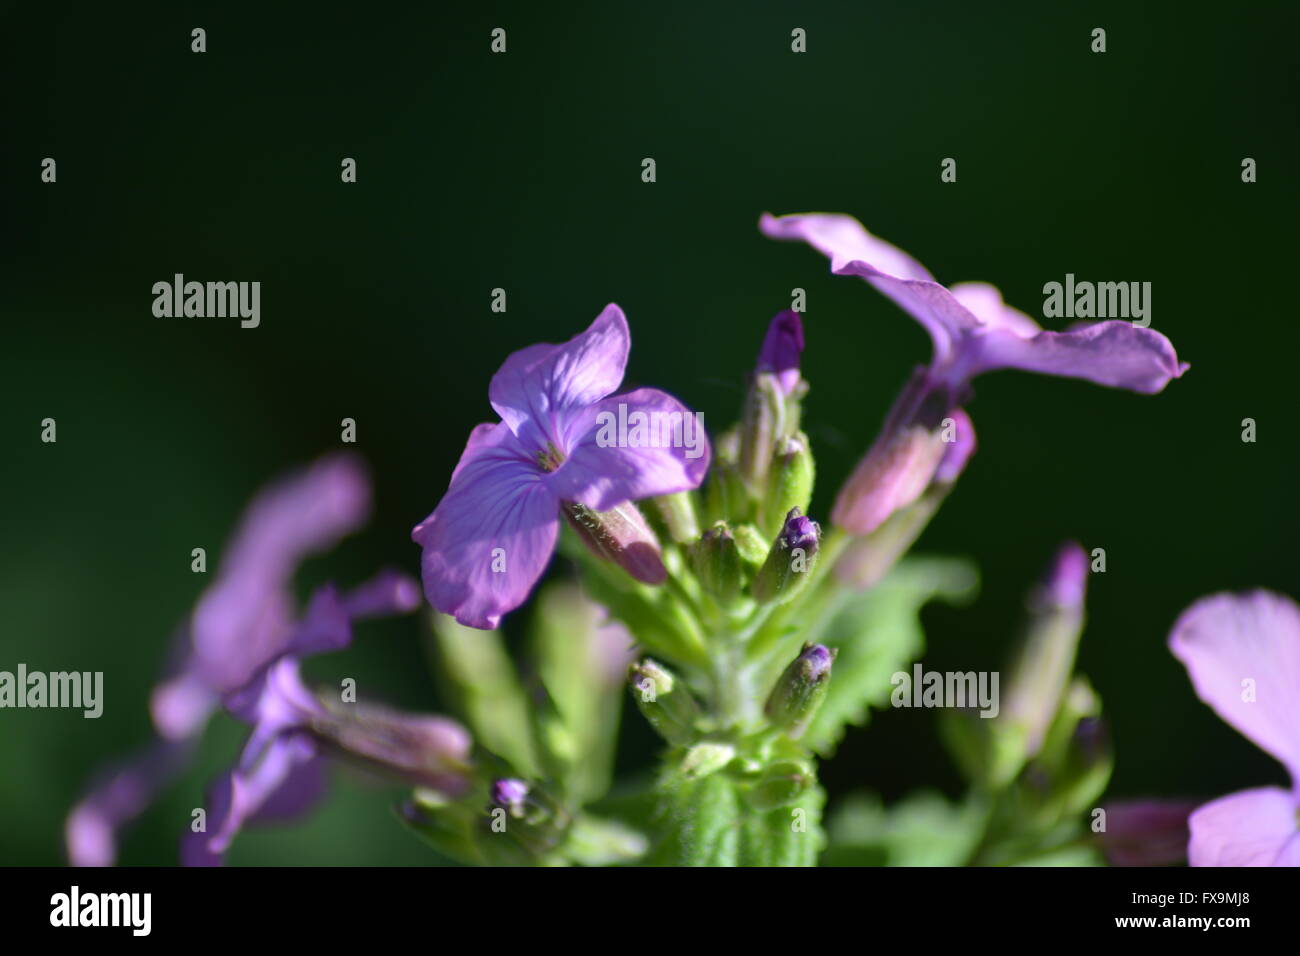 Flowering periwinkles in spring Stock Photo